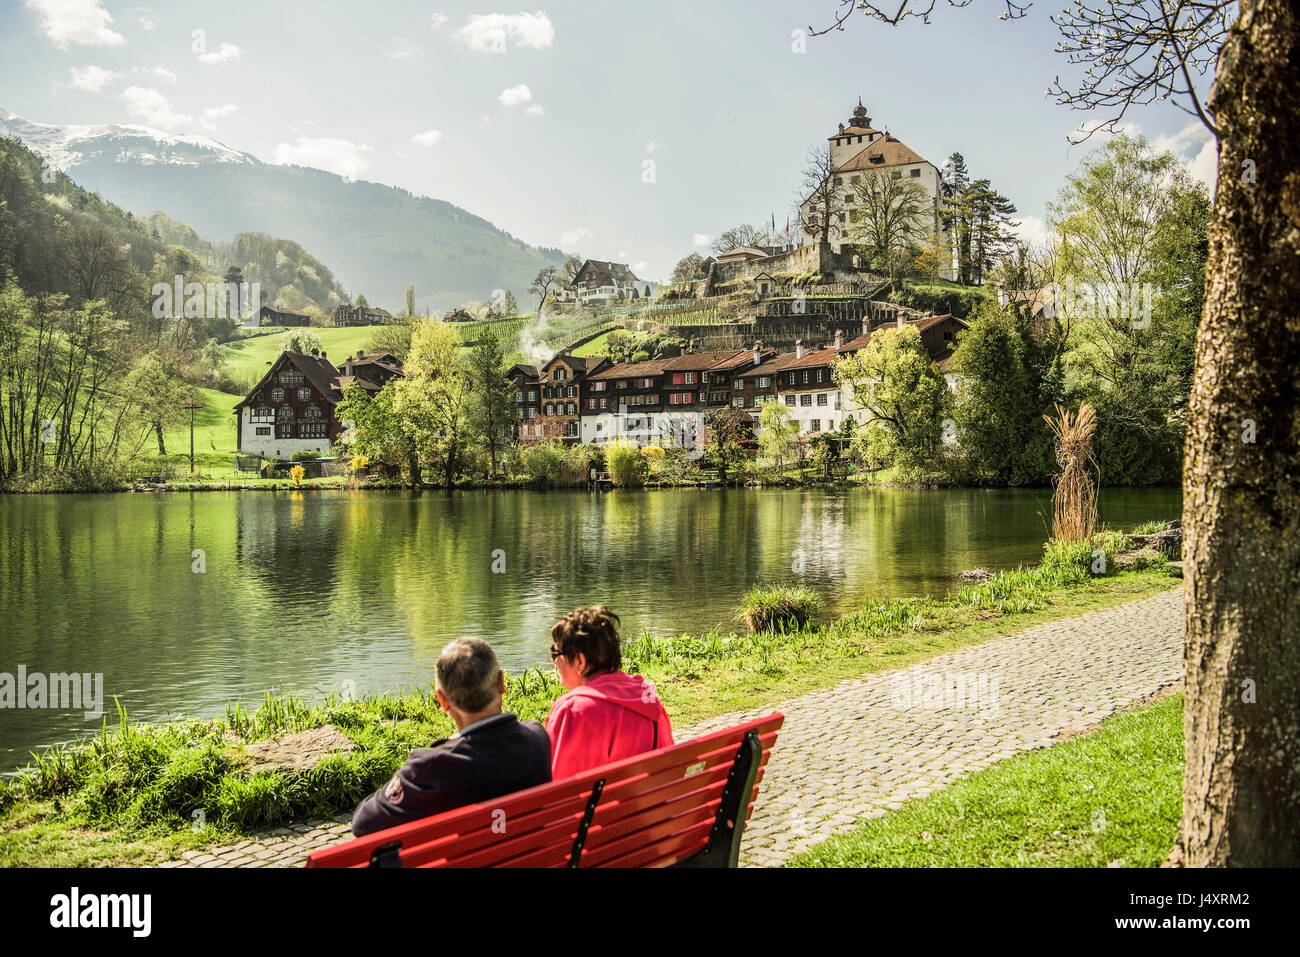 Blick auf Werdenberg Schloss Seewassers Buchs, Sankt Gallen Kanton der  Schweiz zu sehen. Derek Hudson / Alamy Stock Foto Stockfotografie - Alamy